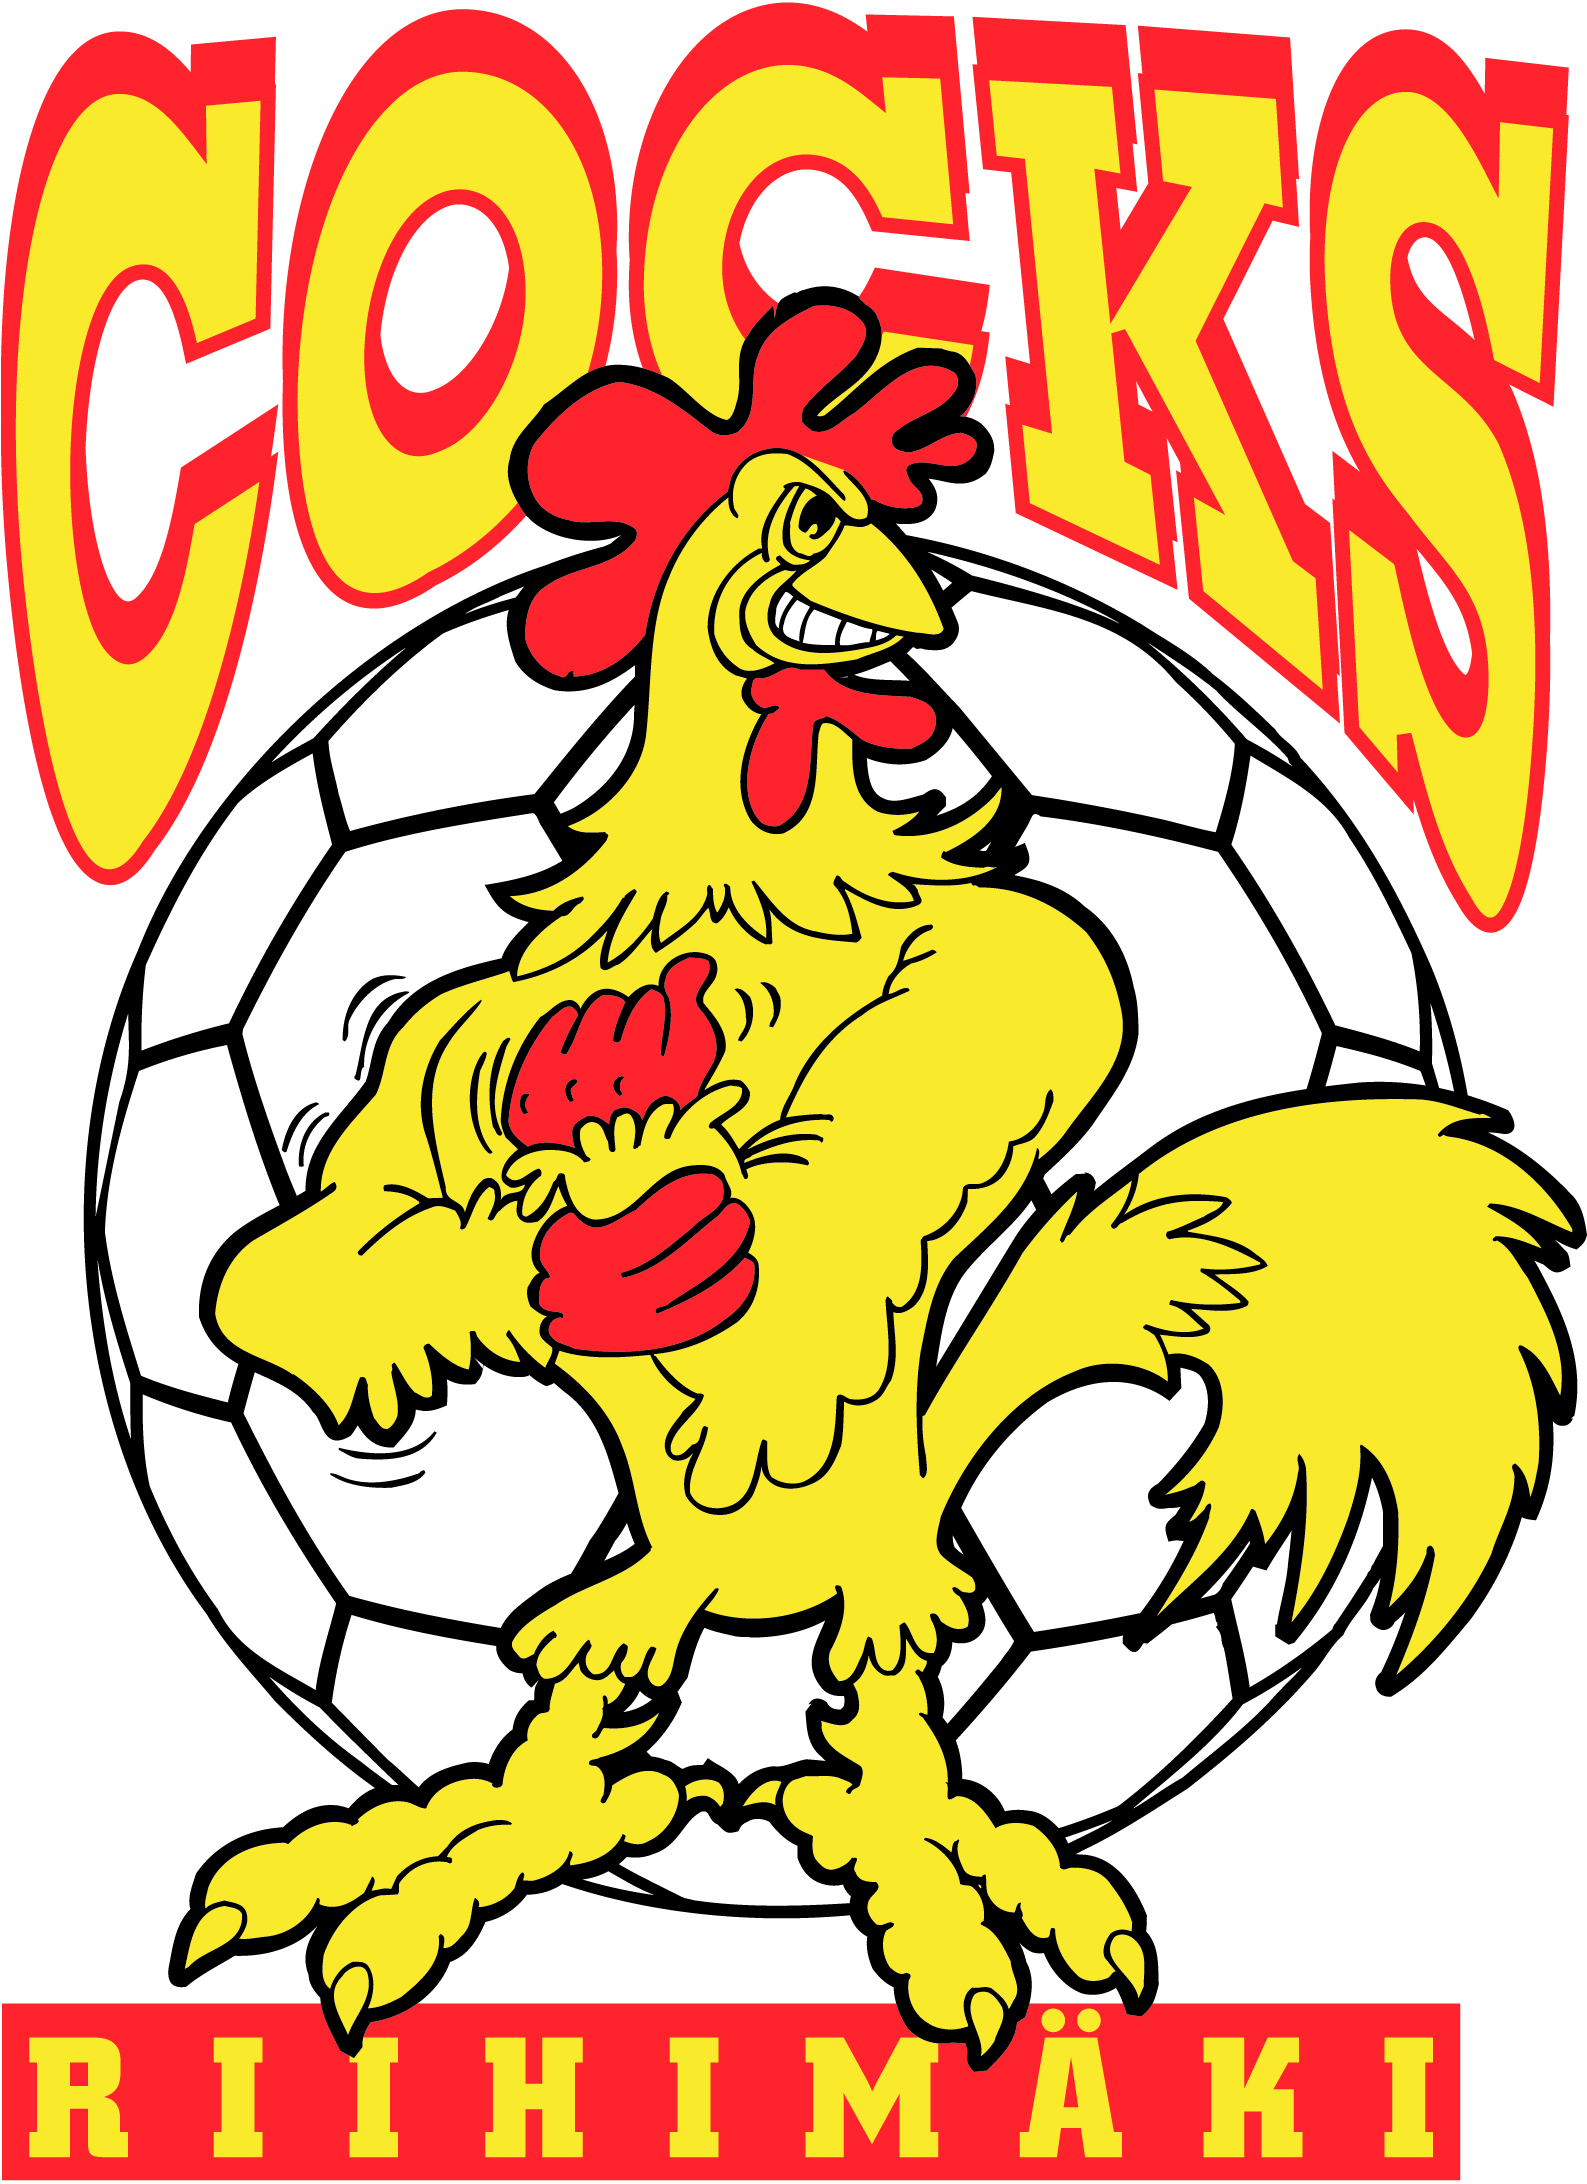 Cock team. Riihimaki cocks. Cock.